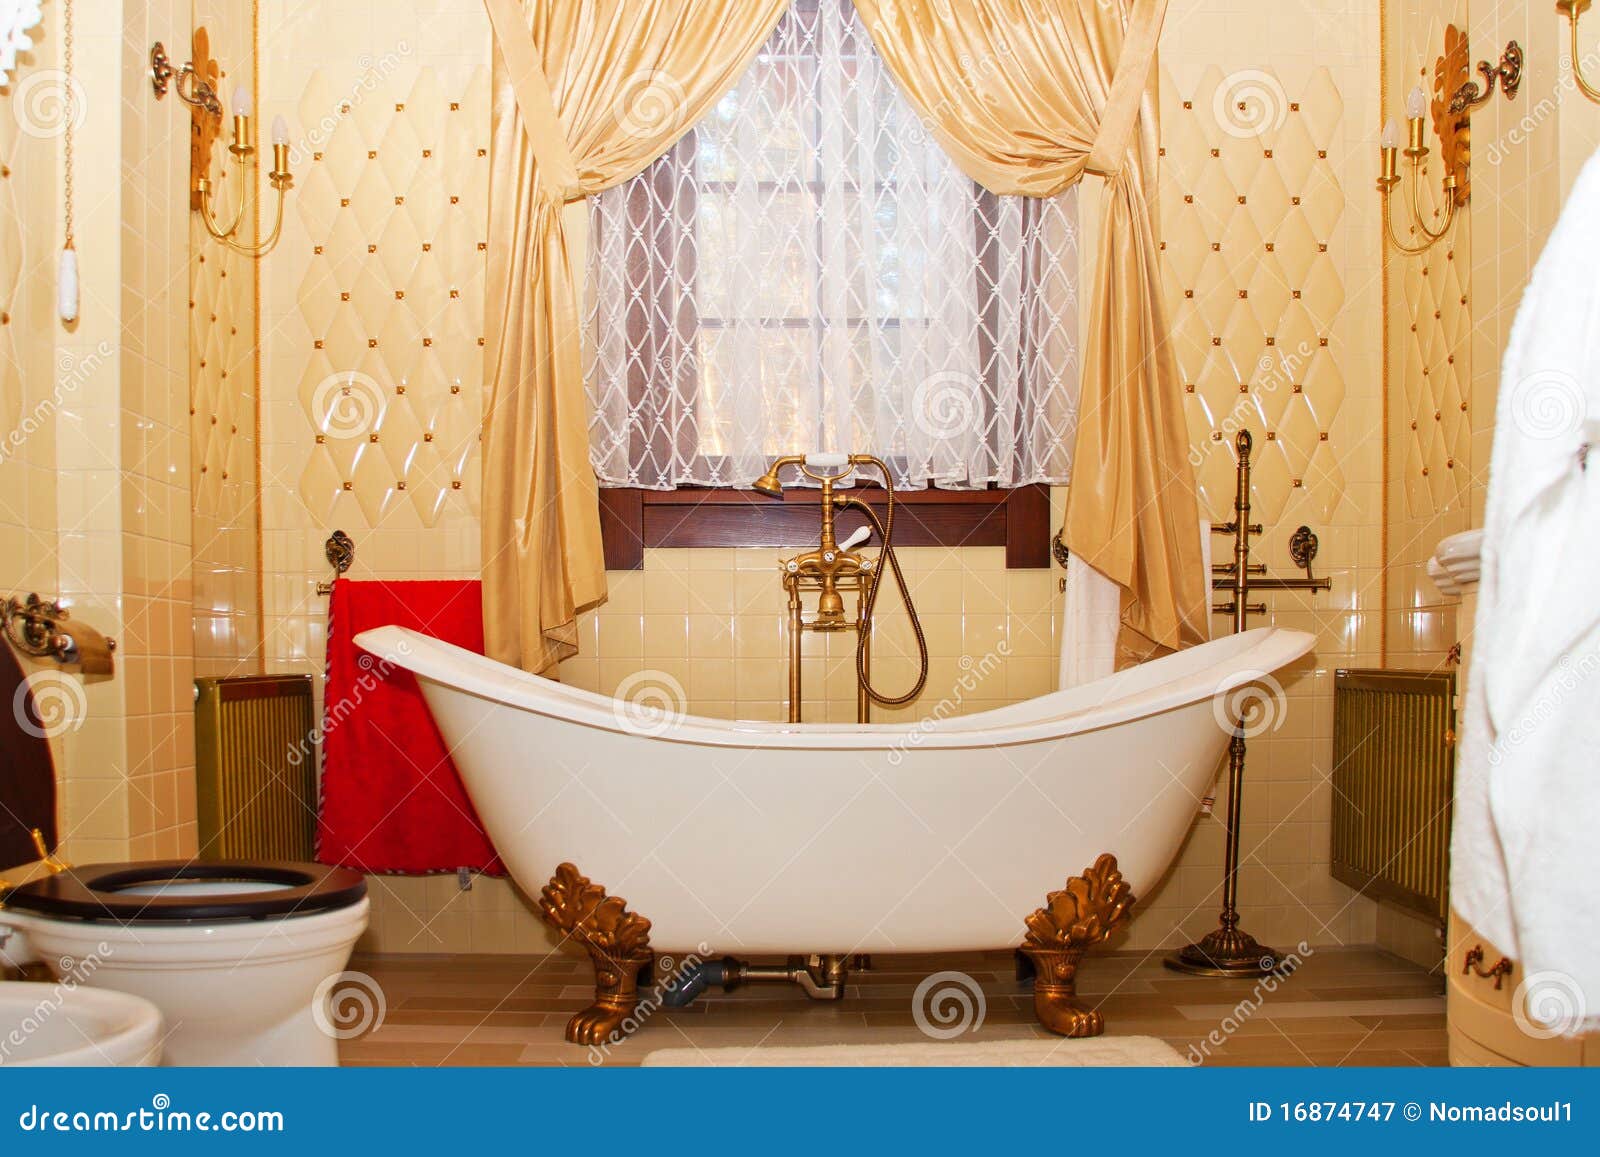 Luxury Vintage Bathroom Interior Stock Image - Image of hygiene, bidet ...